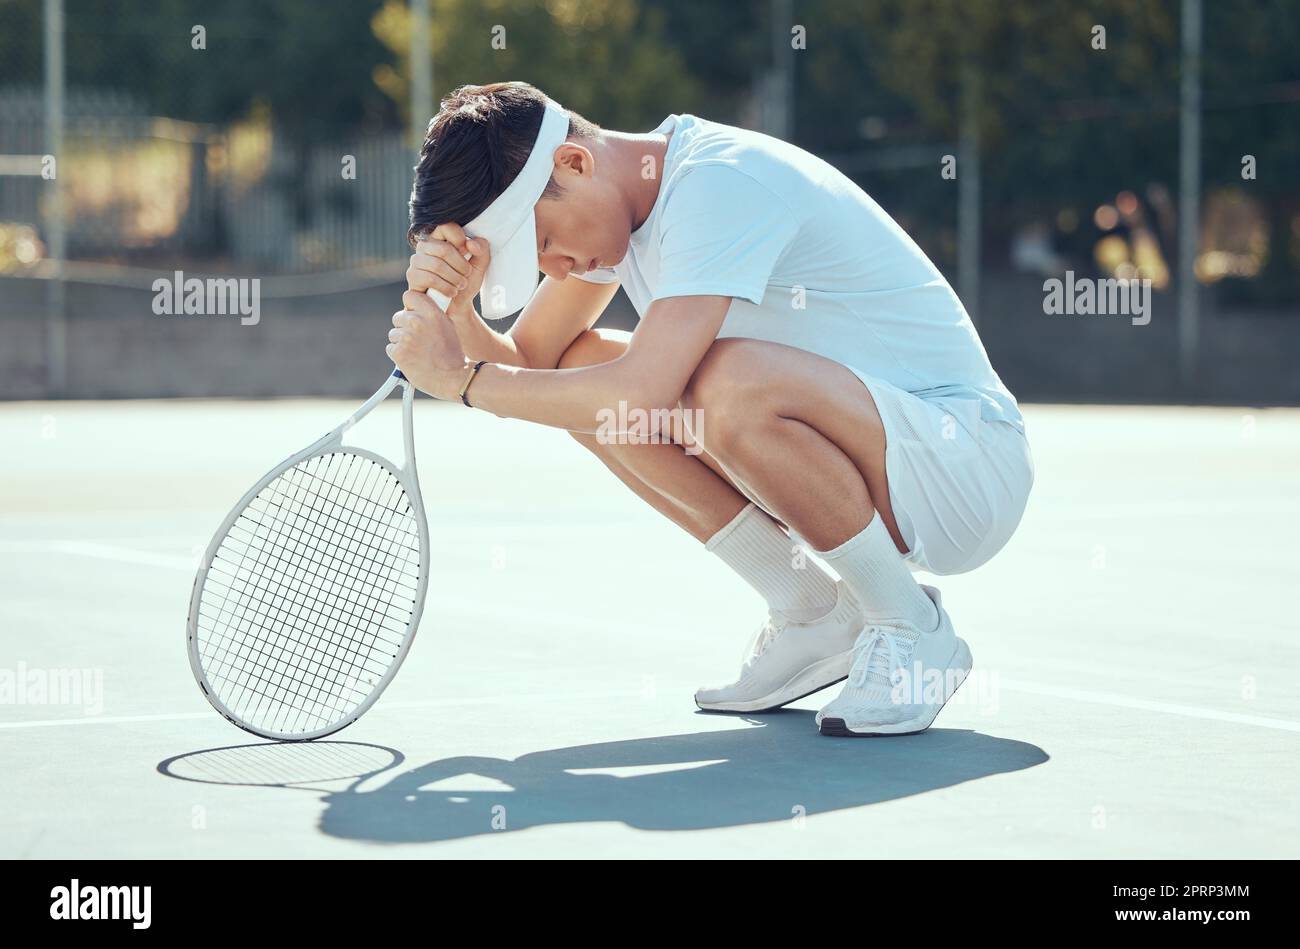 Erreur de tennis, l'homme se concentrer et prier position d'un athlète de  Chine triste au sujet des résultats de match de sport. Fitness,  entraînement et entraînement sportif d'un fort comme Photo Stock -